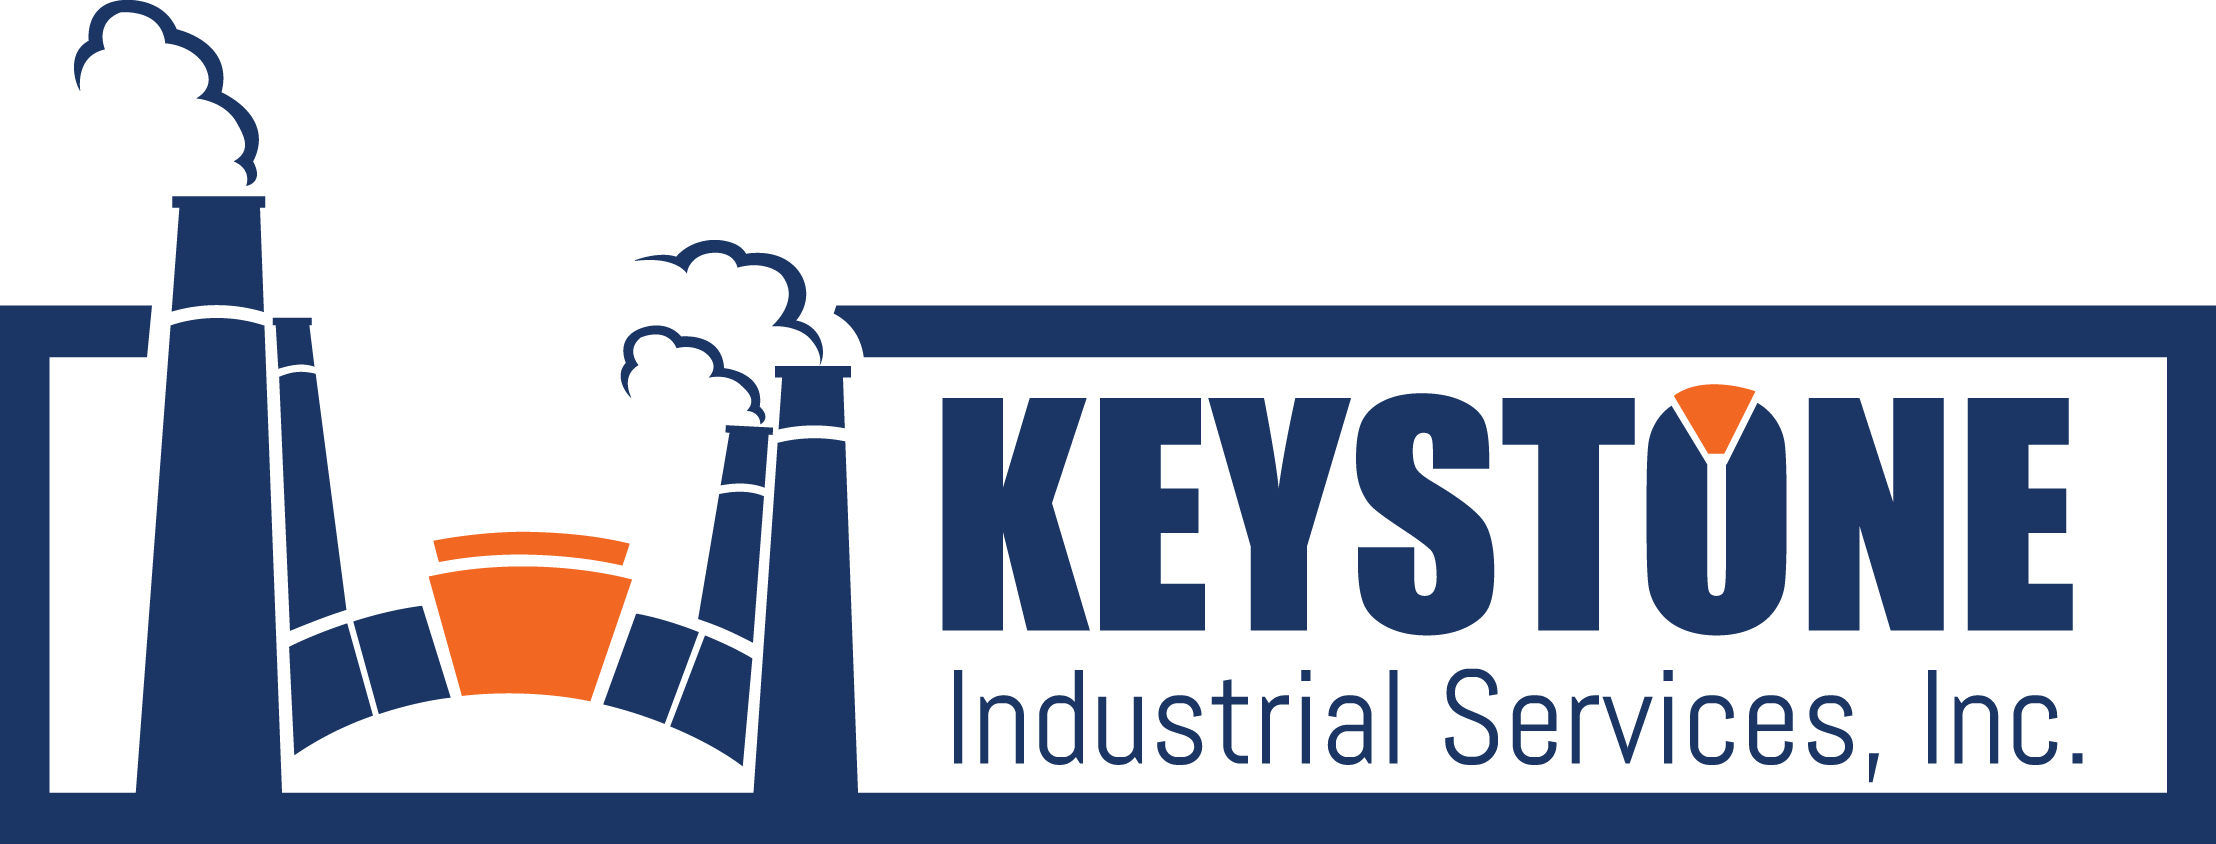 Industrial Service Logo - Gallery | Mid-Atlantic Industrial Services, Industrial Painters and ...